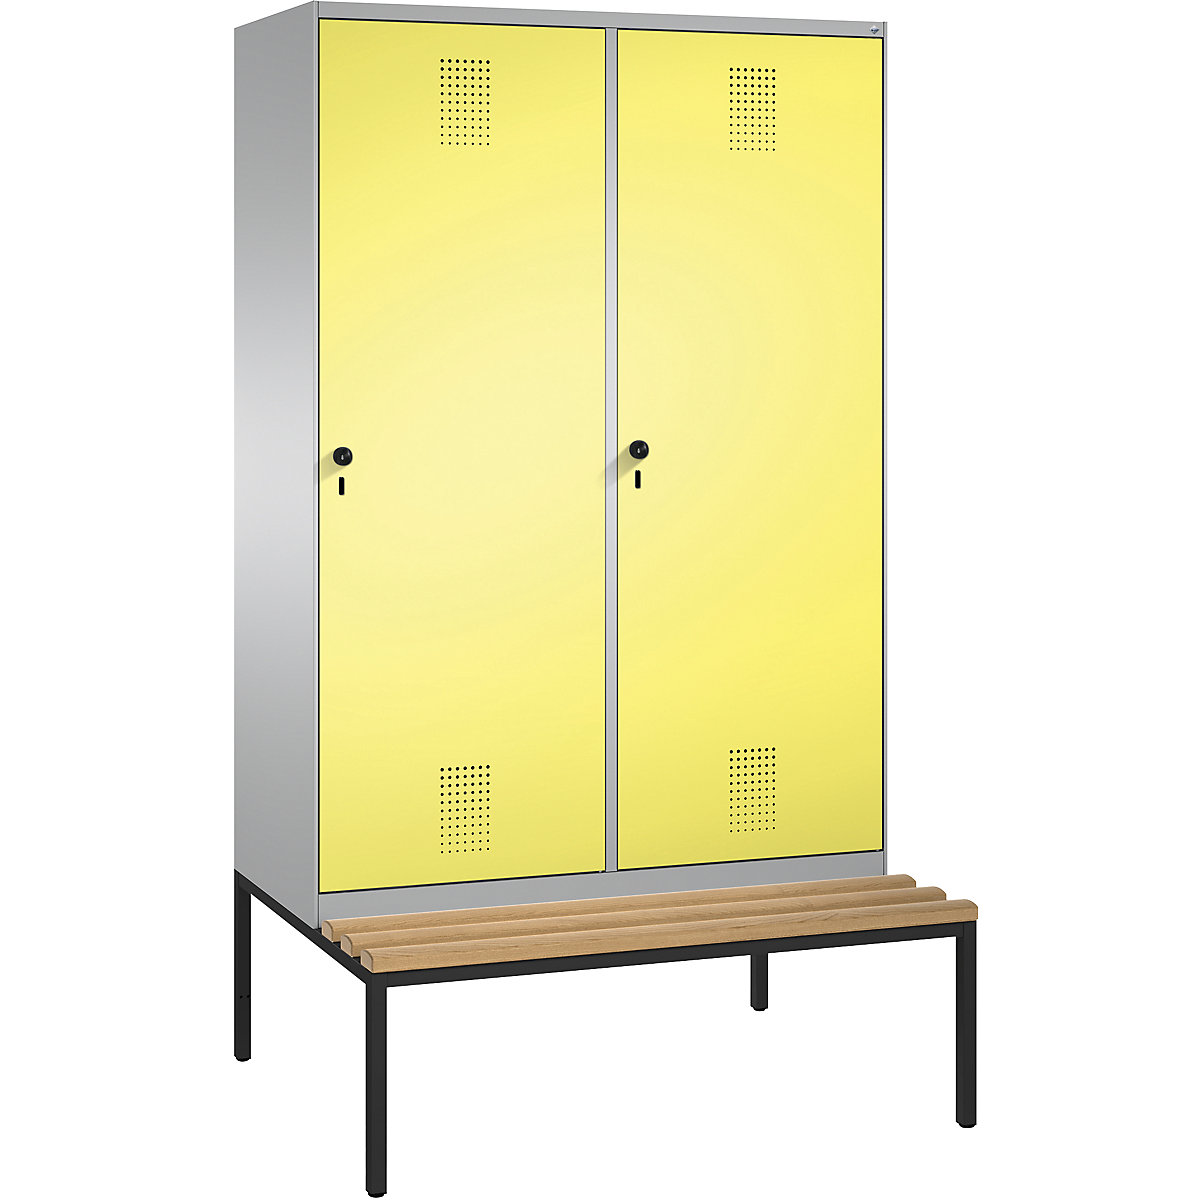 Šatní skříň s lavicí EVOLO s dveřmi přes 2 oddíly – C+P, 4 oddíly, 2 dveře, šířka oddílu 300 mm, bílý hliník / sírová žlutá-11